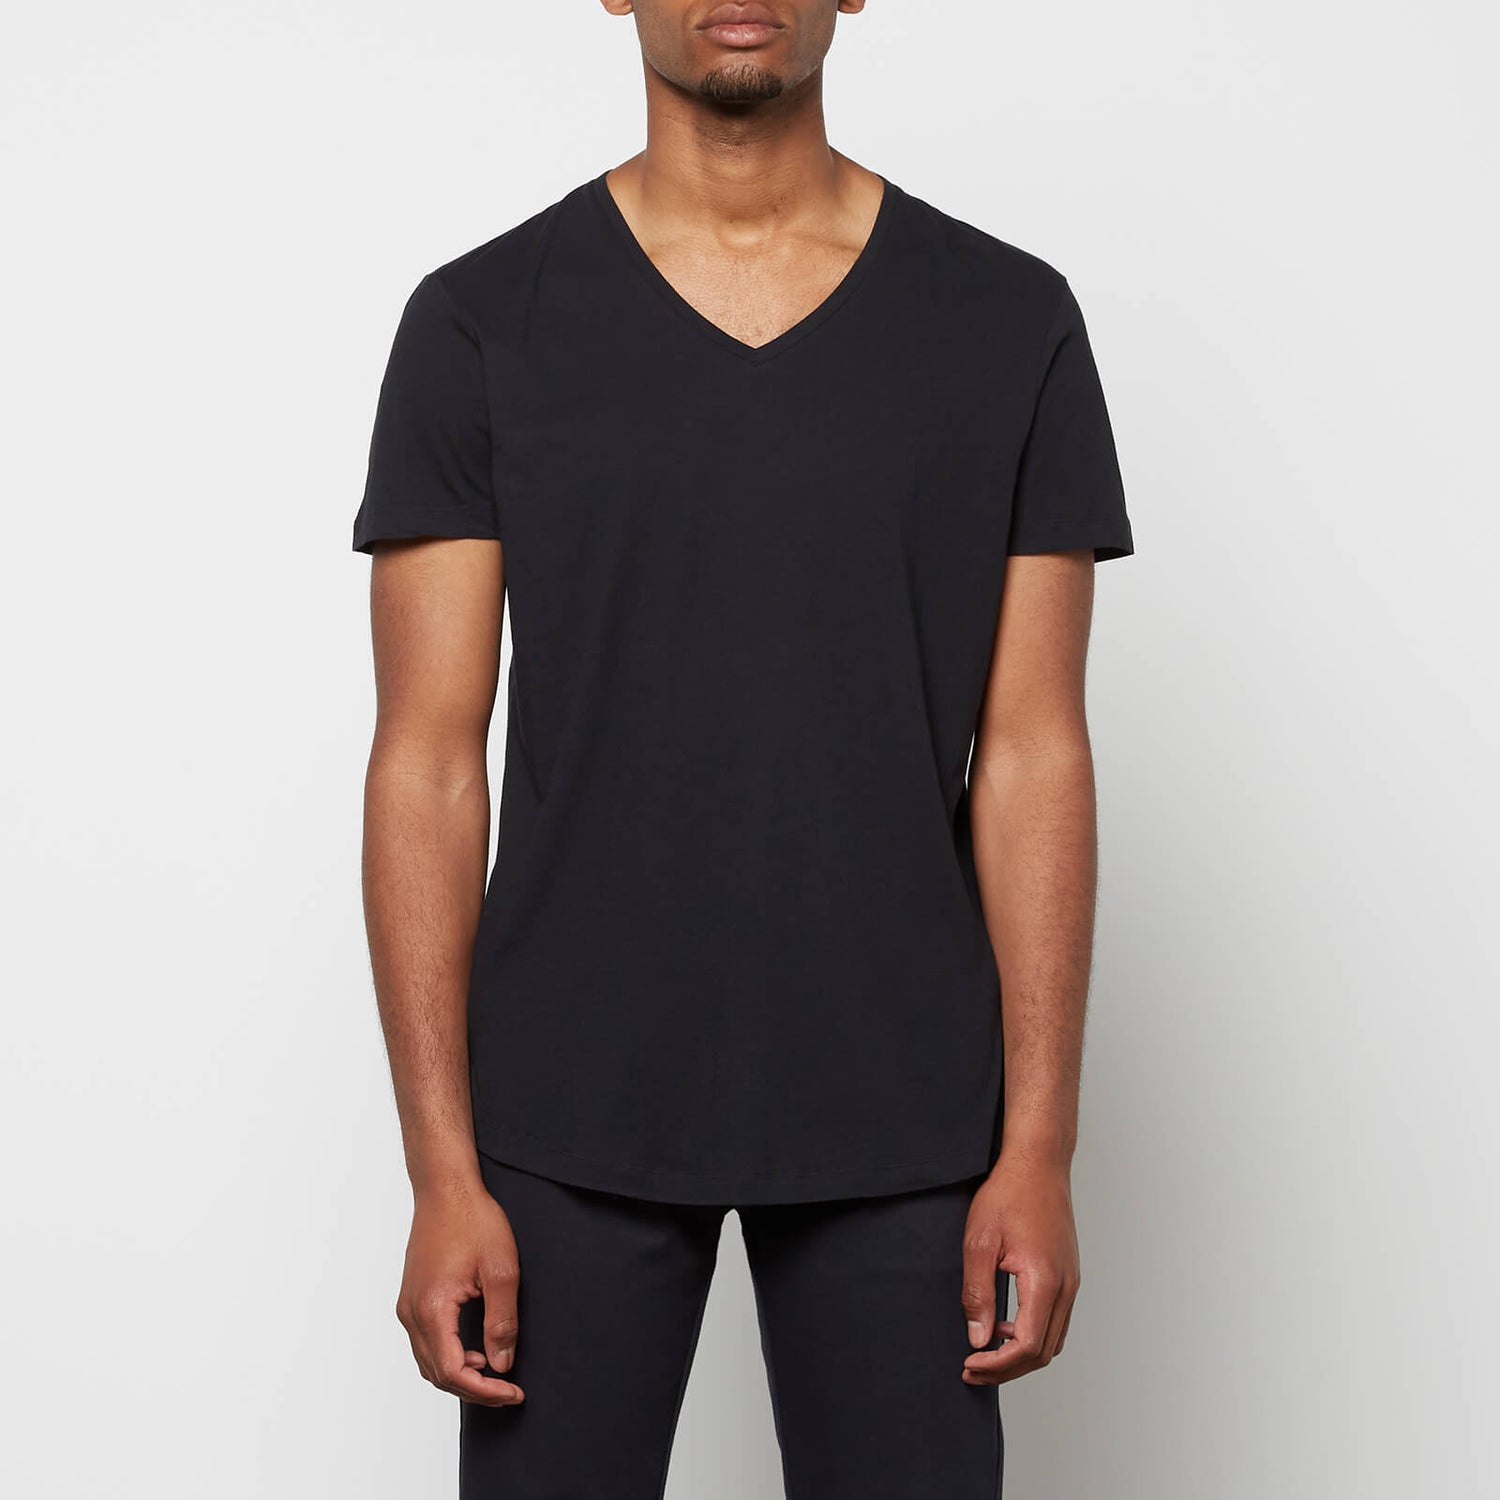 Orlebar Brown Men's V-Neck T-Shirt - Black - M